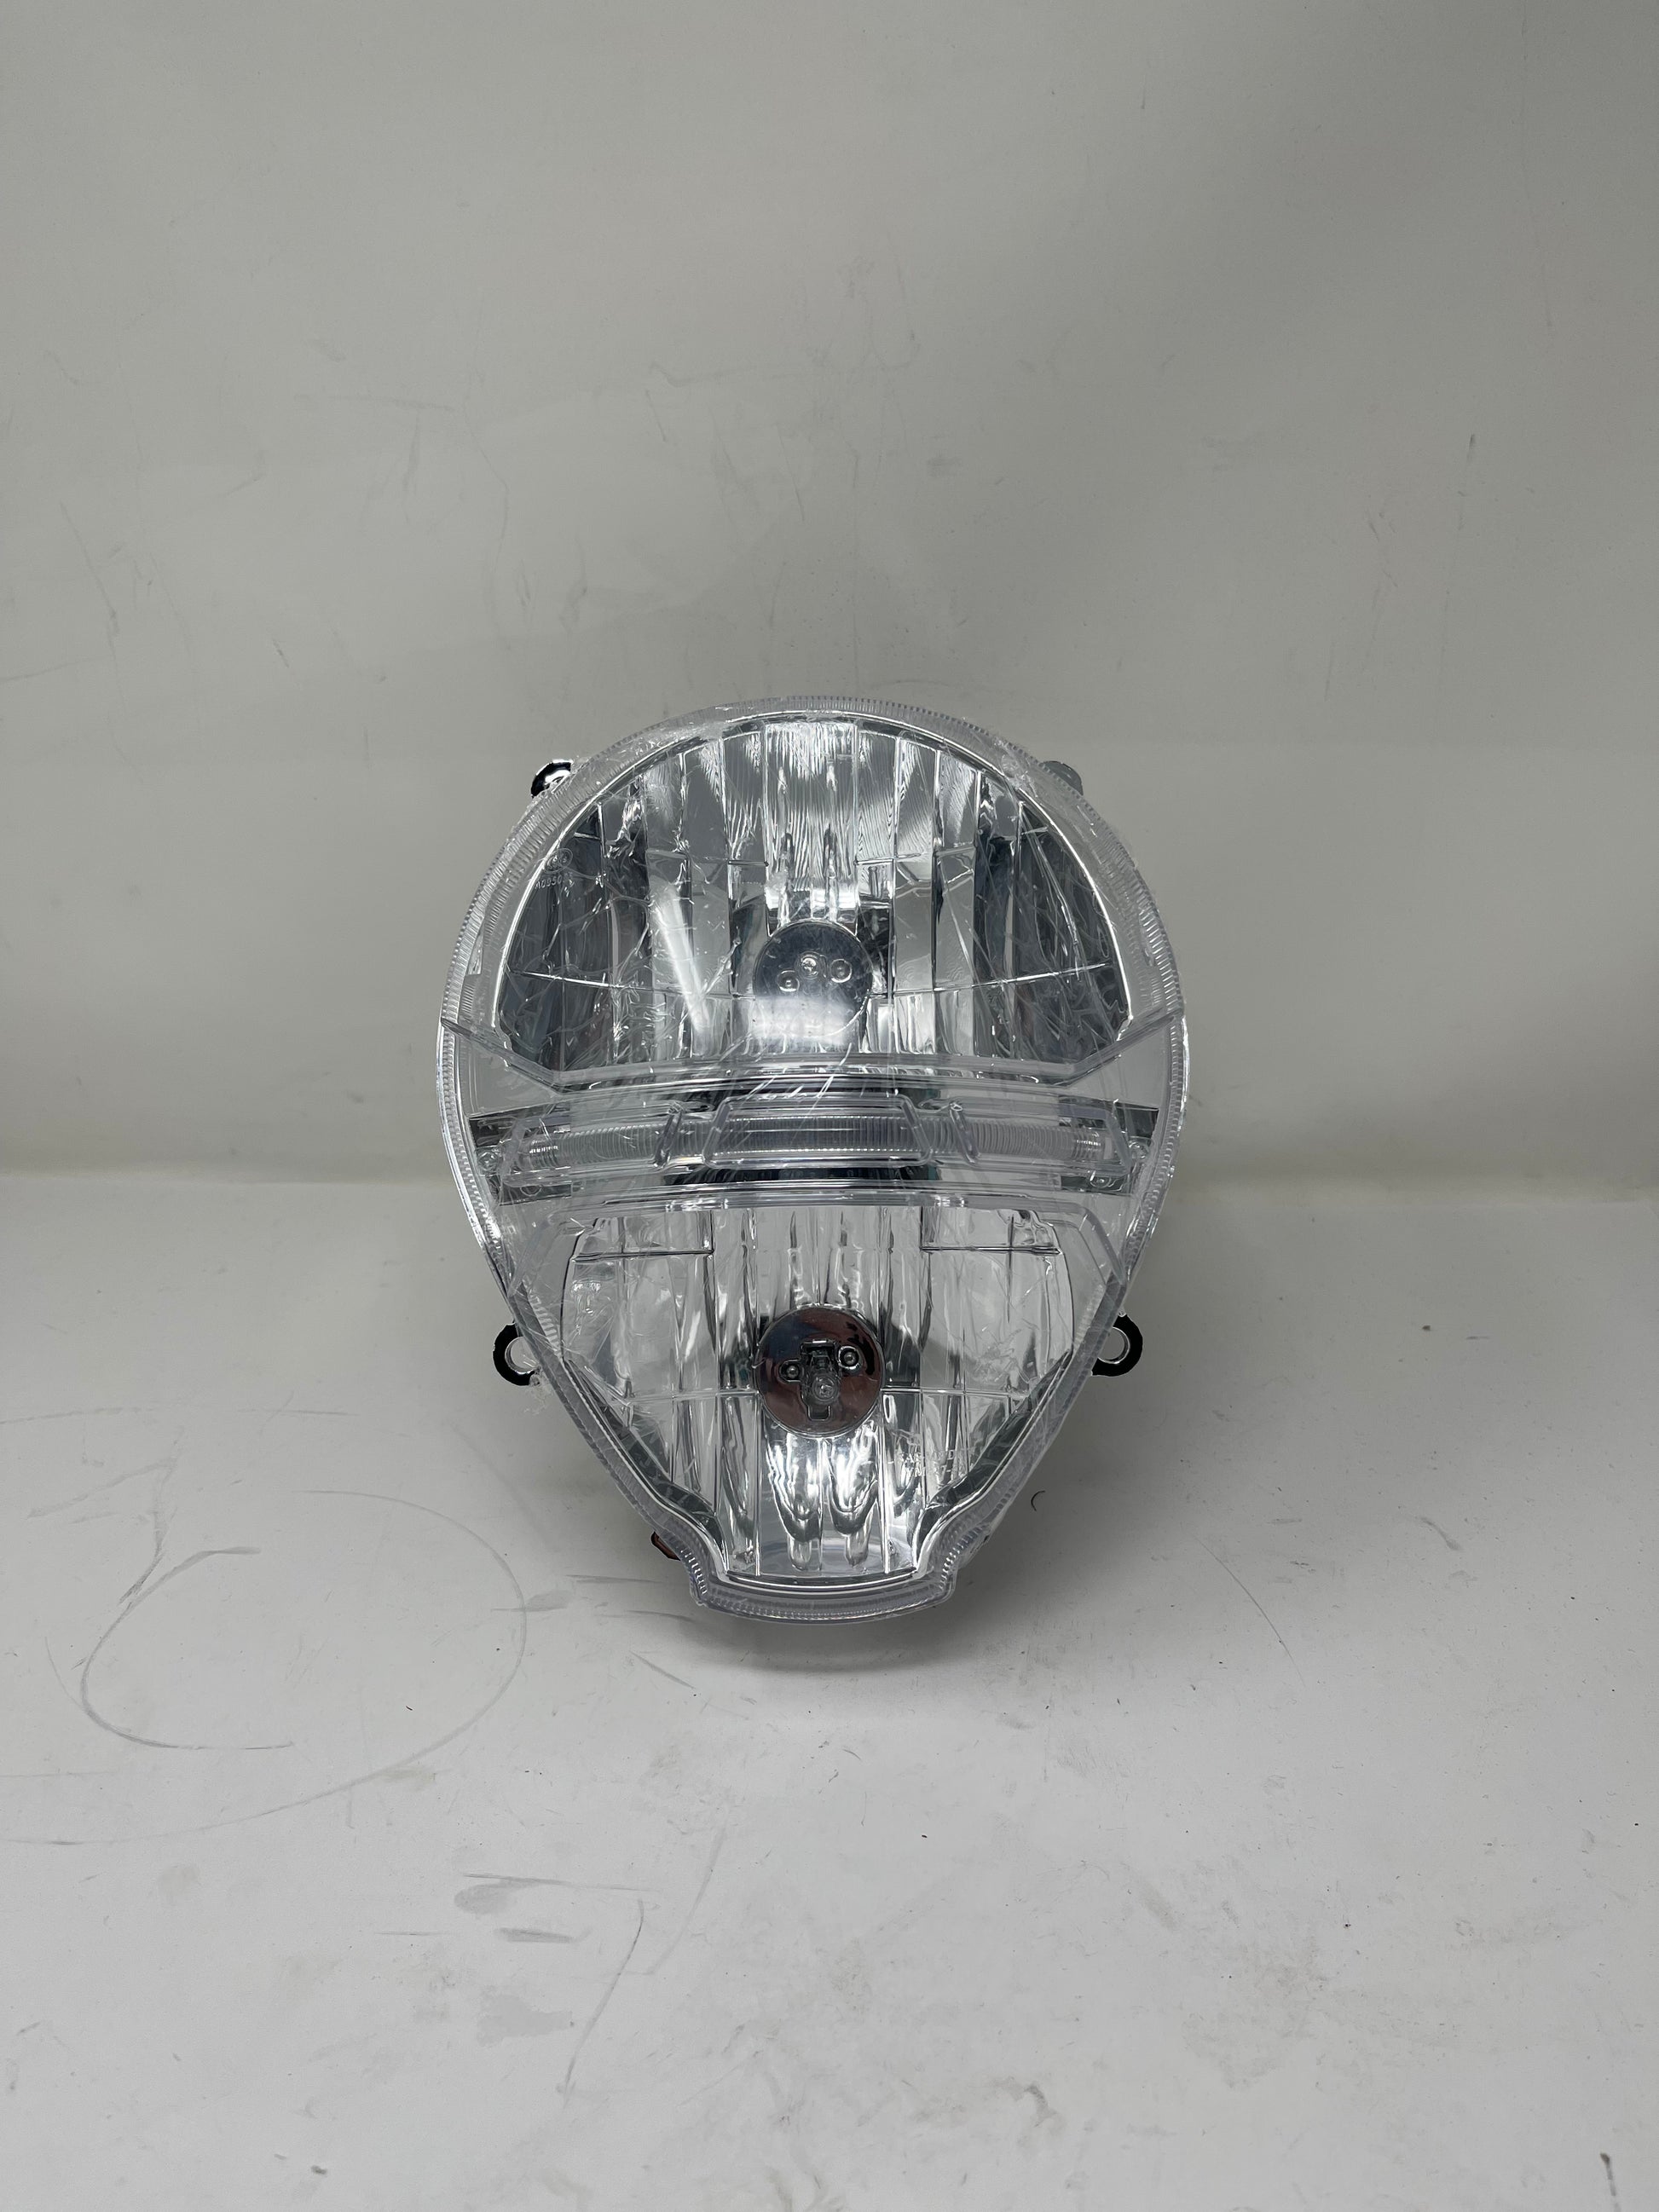 DF50SRT headlight for sale. Buy Headlight for Veno mX21 DF50SRT.